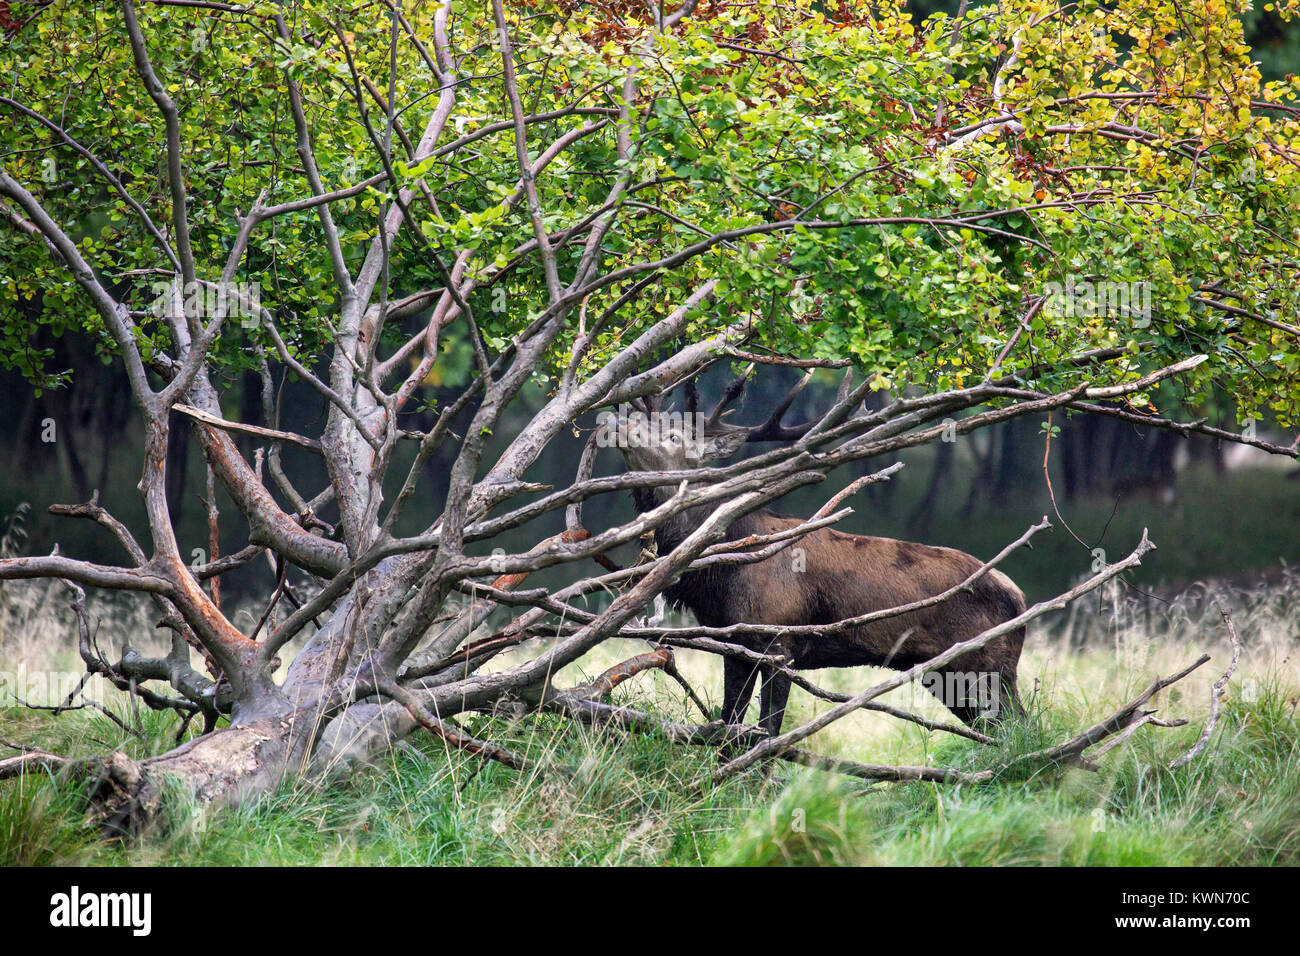 Red Deer (Cervus elaphus) Kopf-schütteln Hirsch anzeigen durch die Fahrpedal-freigabebremse Zweige von gefallenen Baum während der Brunft im Herbst Wald Stockfoto